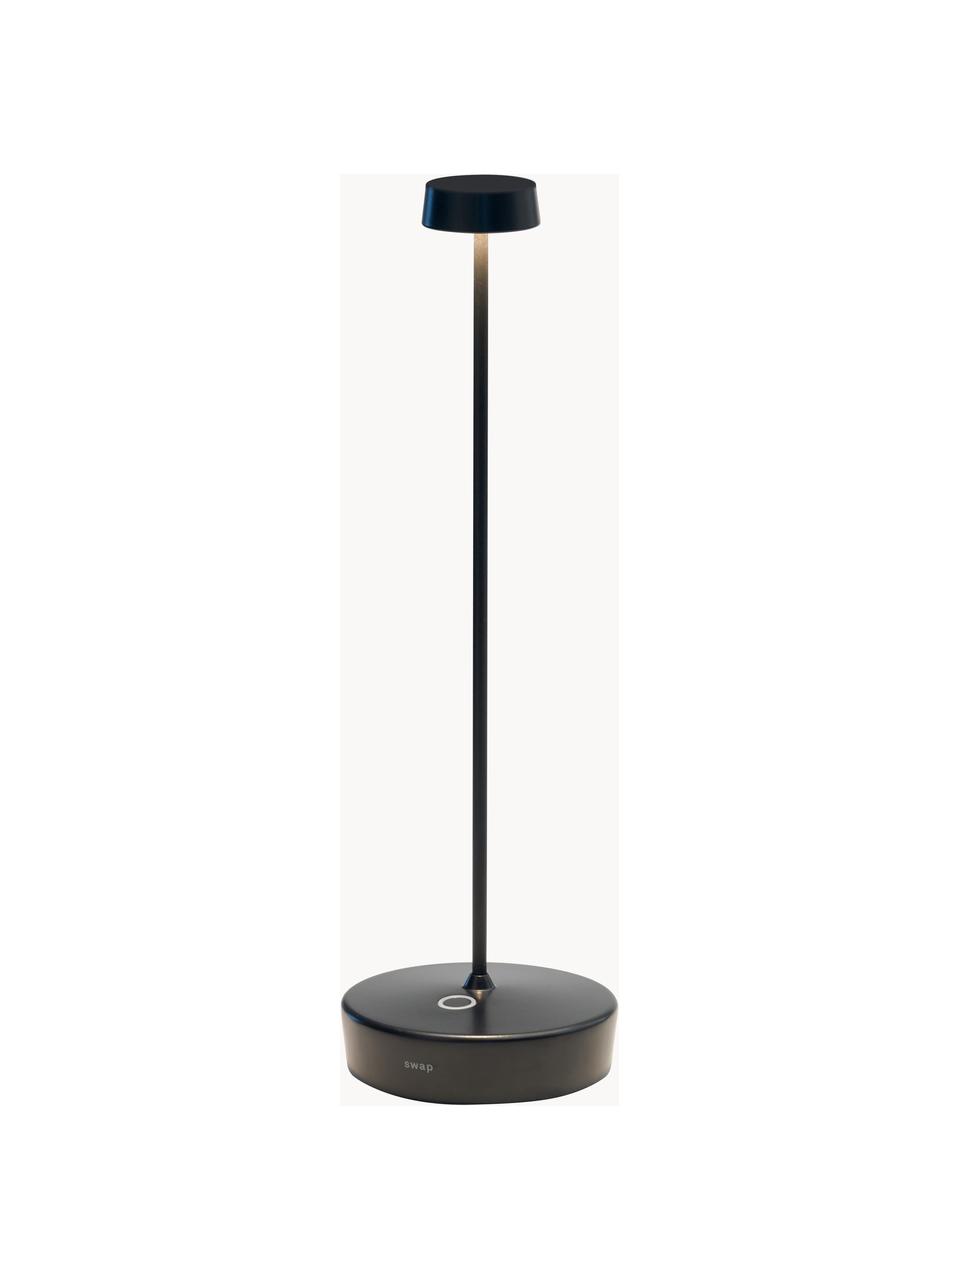 Malá přenosná stmívatelná stolní LED lampa Swap Mini, Černá, Ø 10 cm, V 29 cm